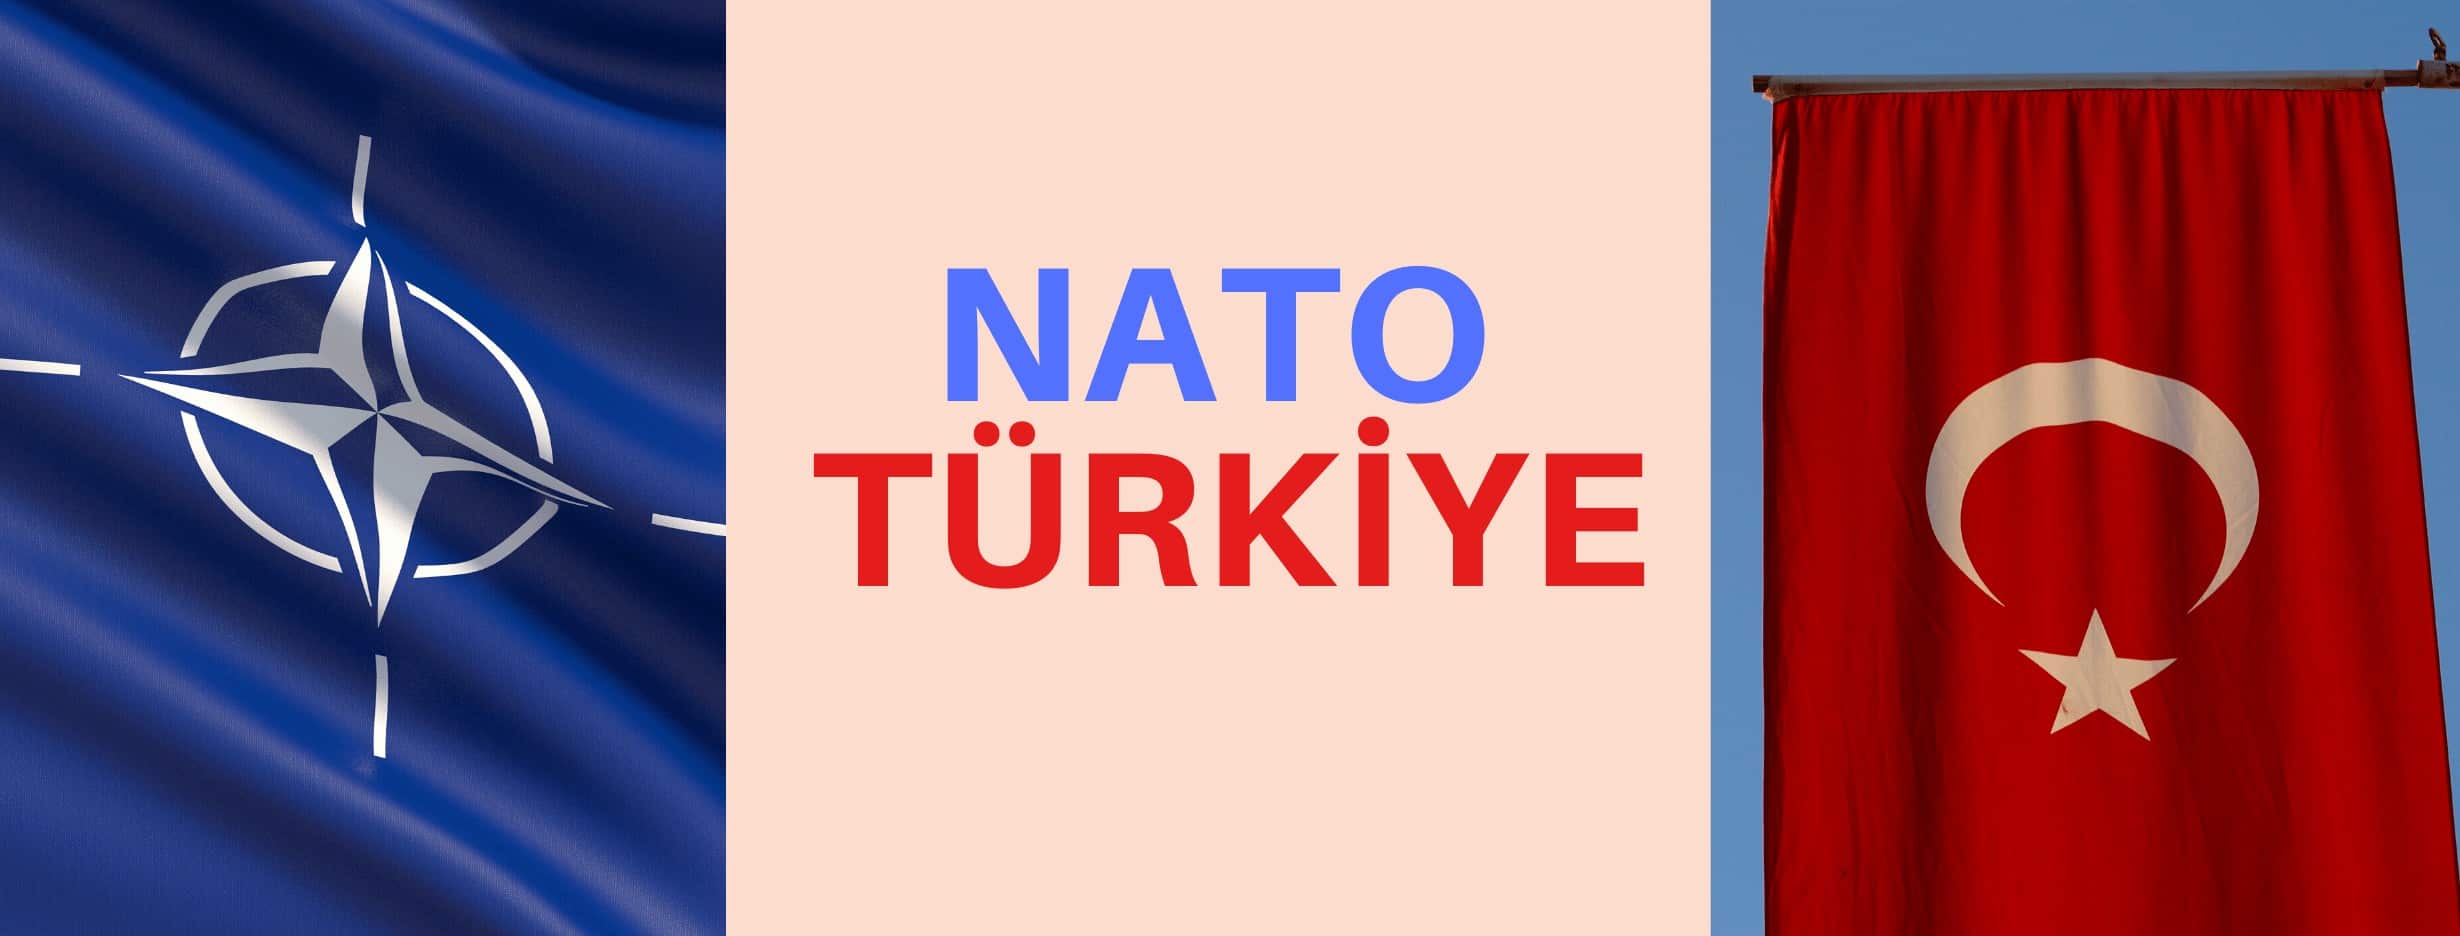 NATO Ve Türkiye 2019 – İnfografik